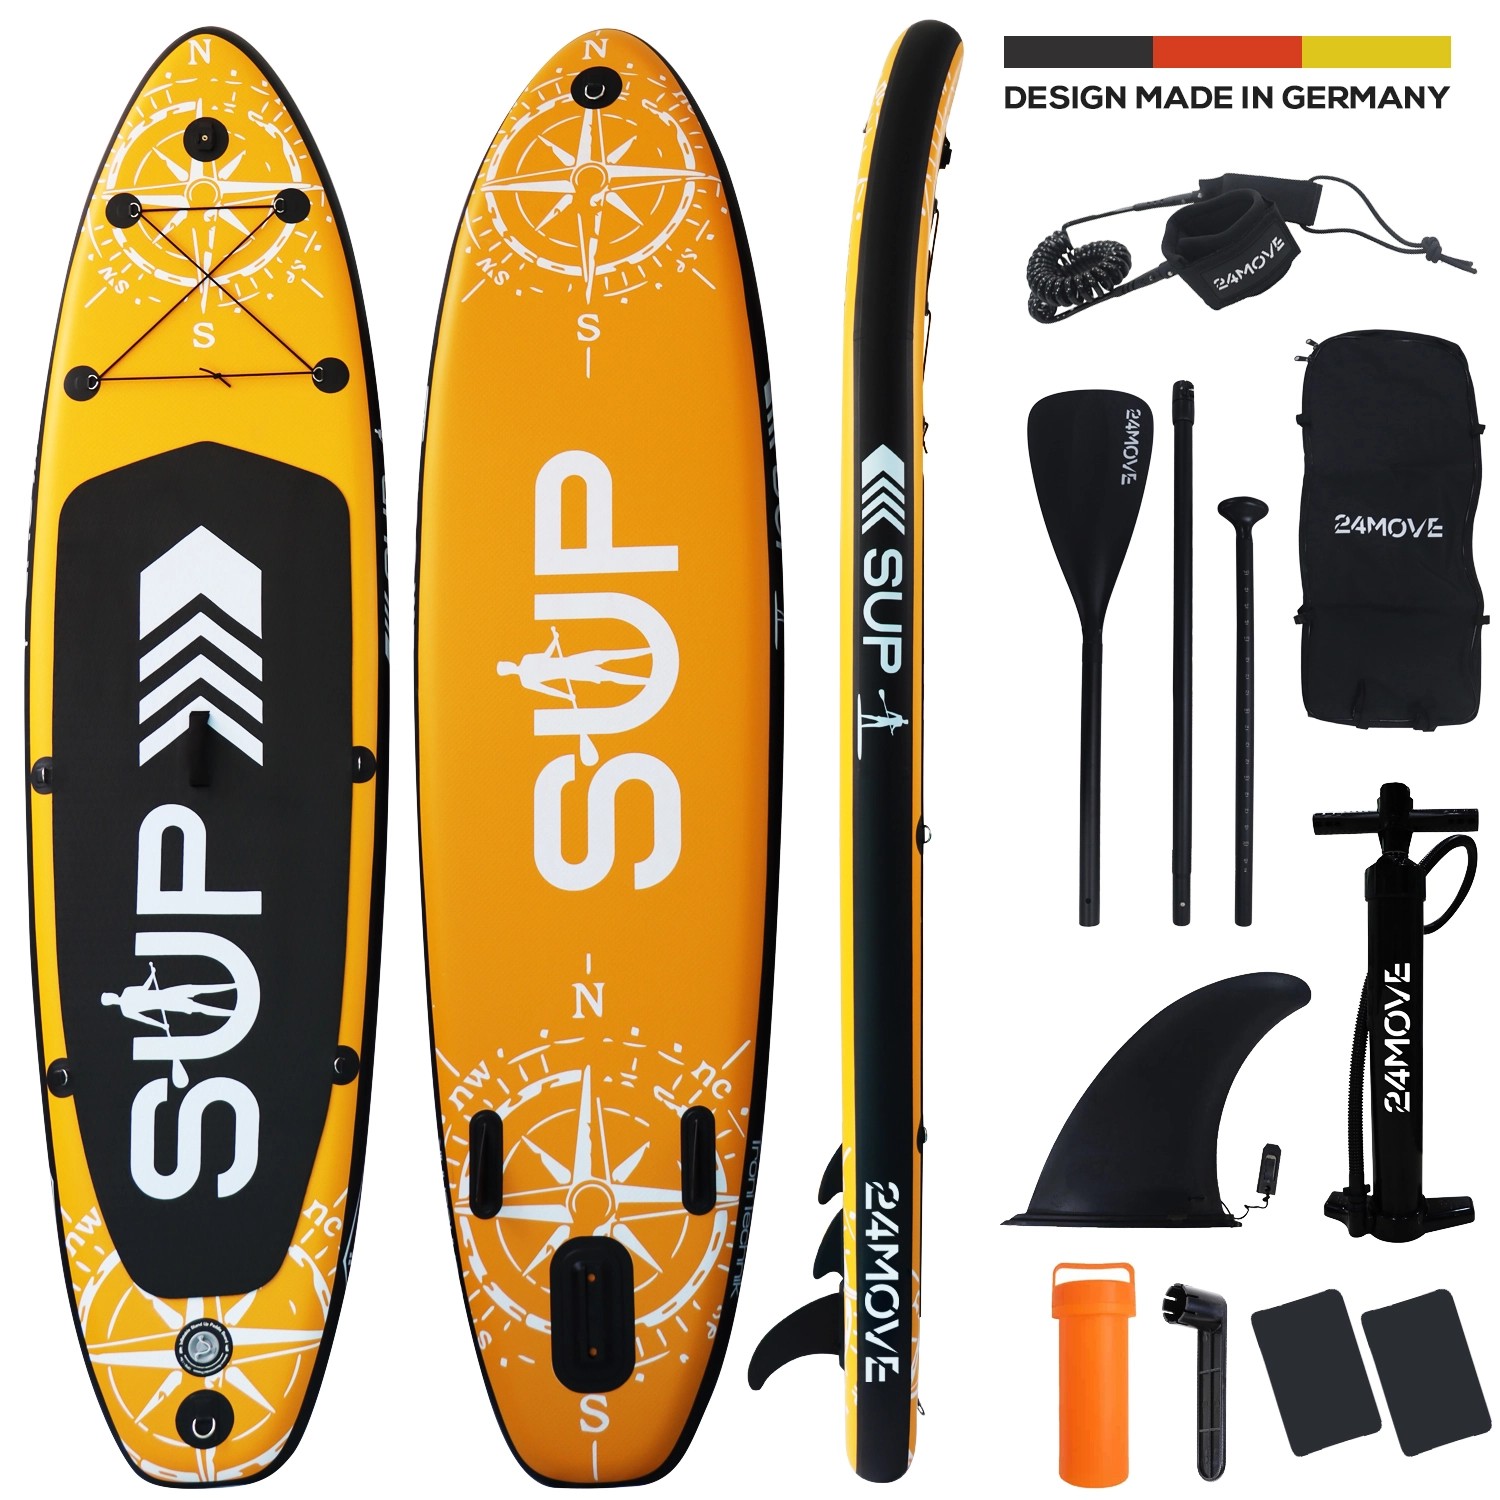 24MOVE Standup Paddle Board SUP- inkl. umfangreichem Zubehör - Orange - 366 x 80 x 15cm